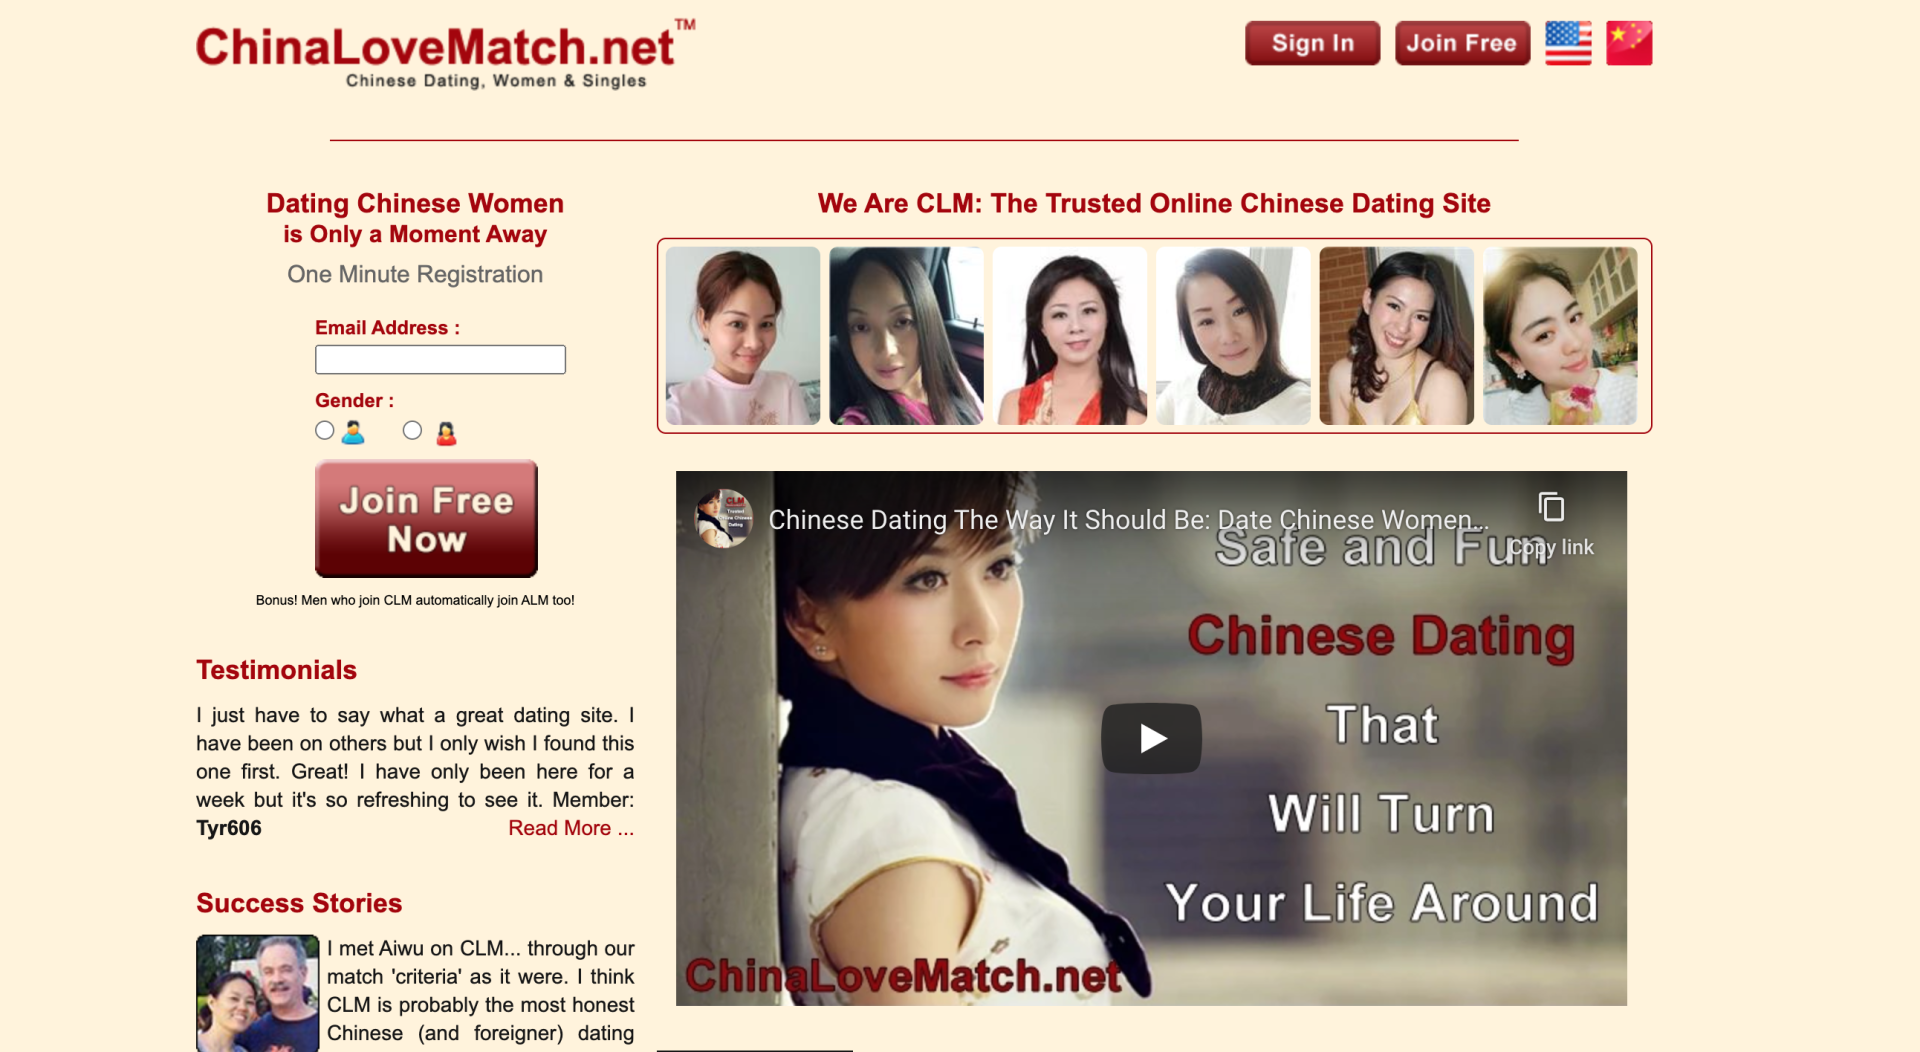 ChinaLoveMatch.net main page